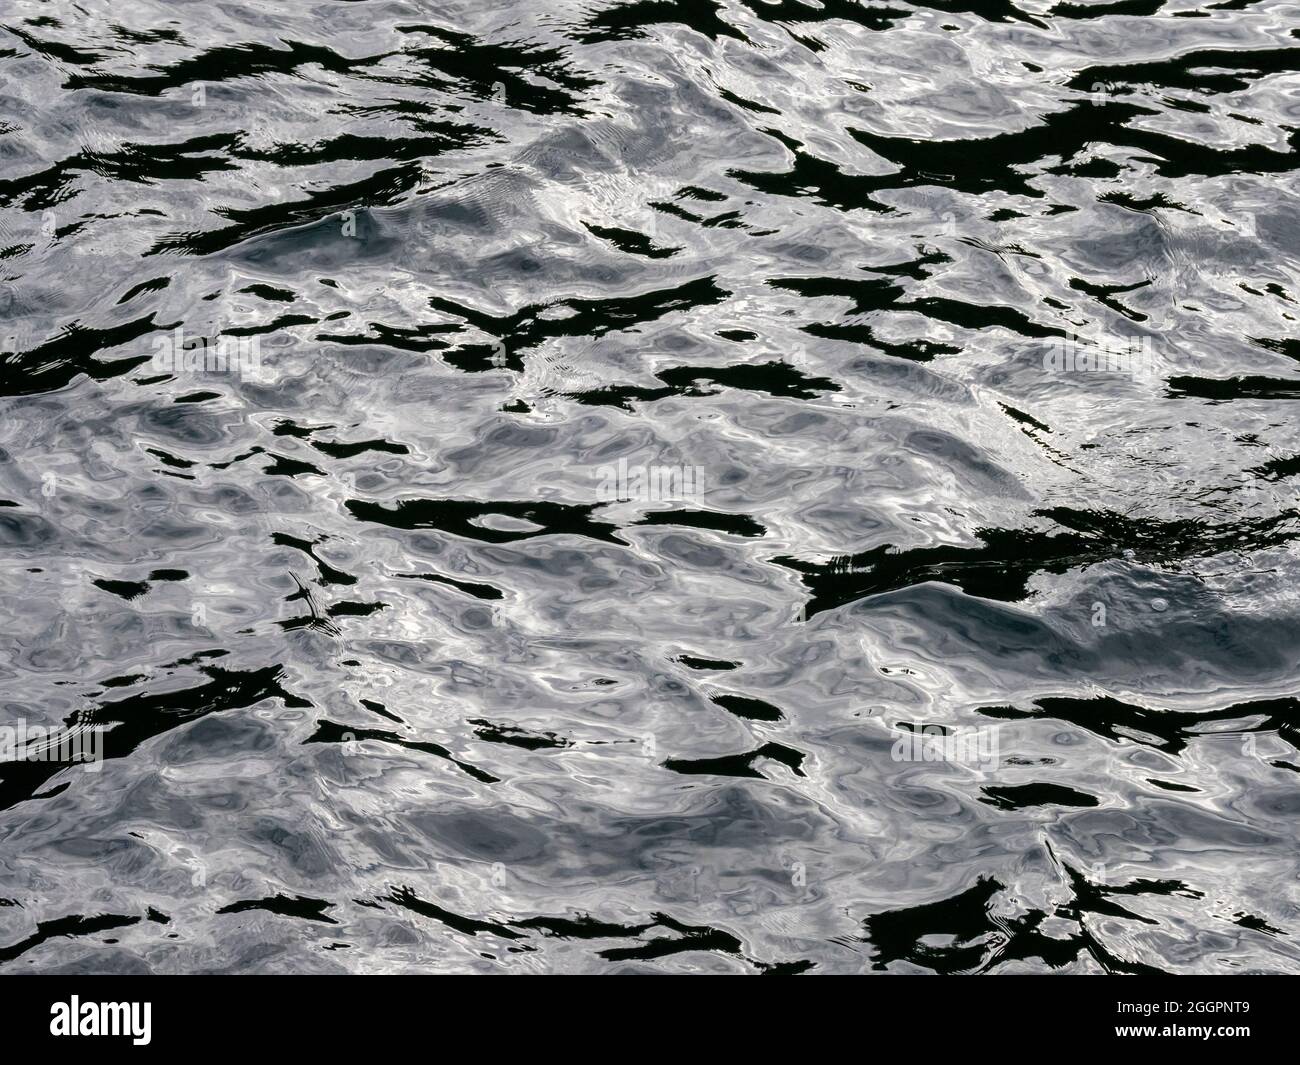 Reflection water pattern, Alaska Stock Photo